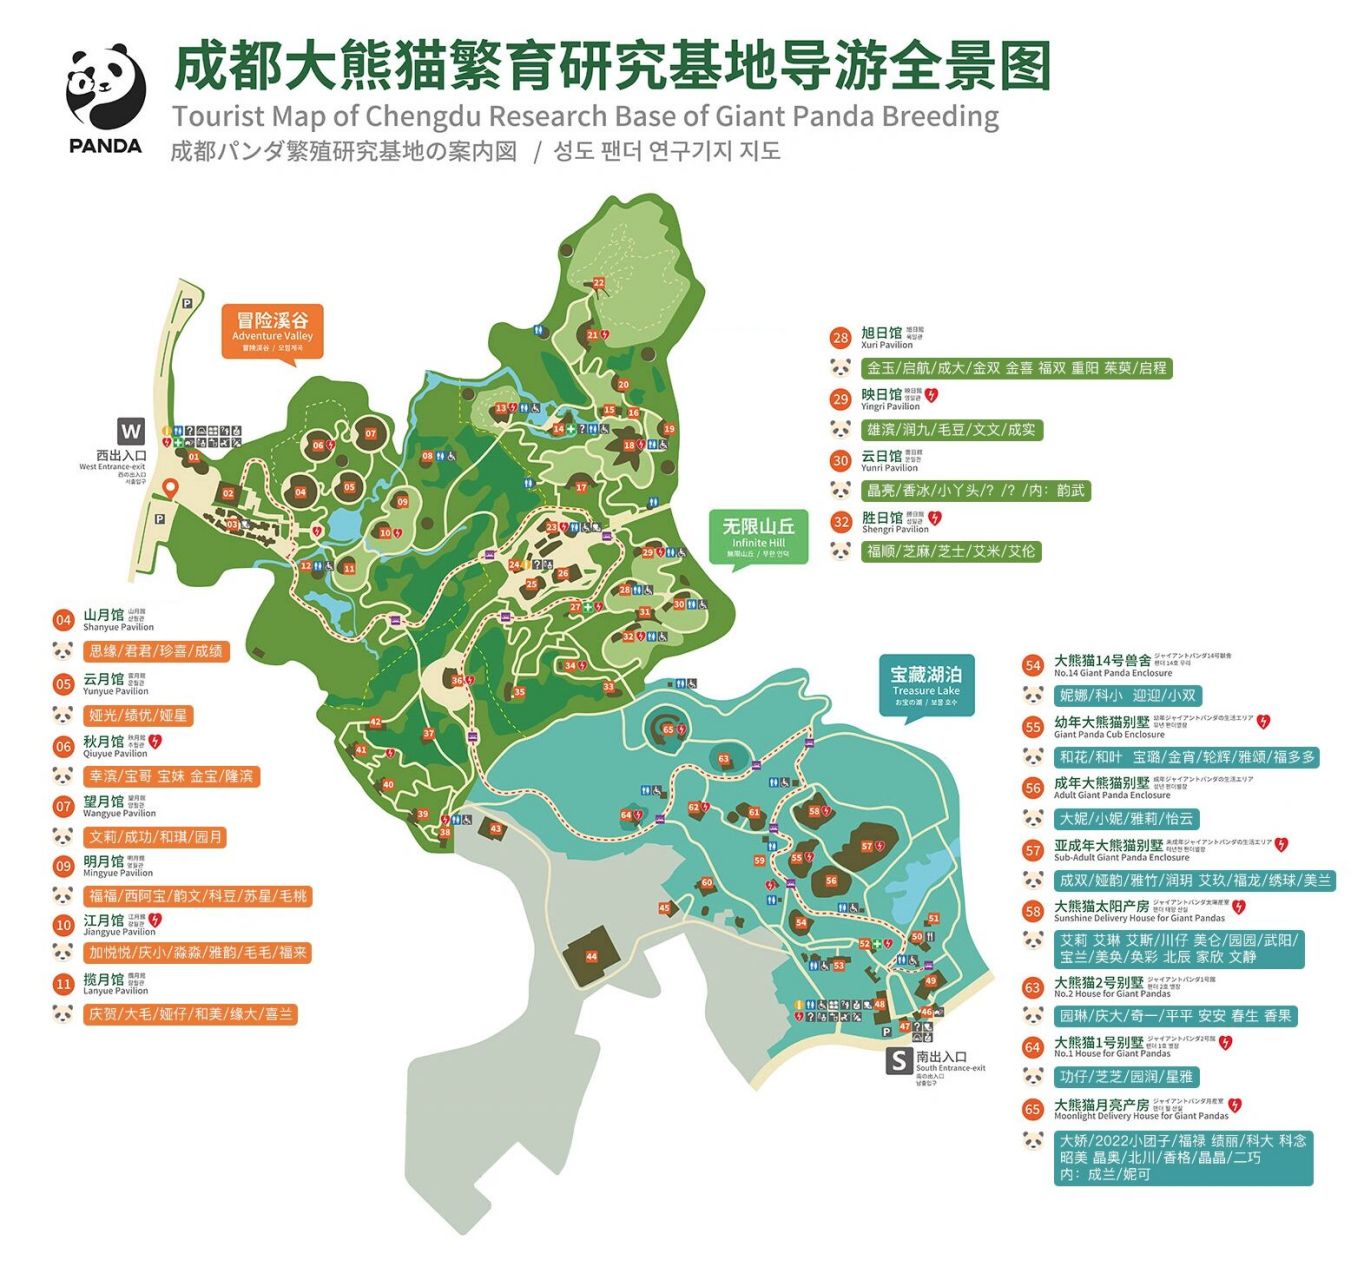 成都大熊猫基地国宝所在场馆地图     基地有点大,方便大家能查找